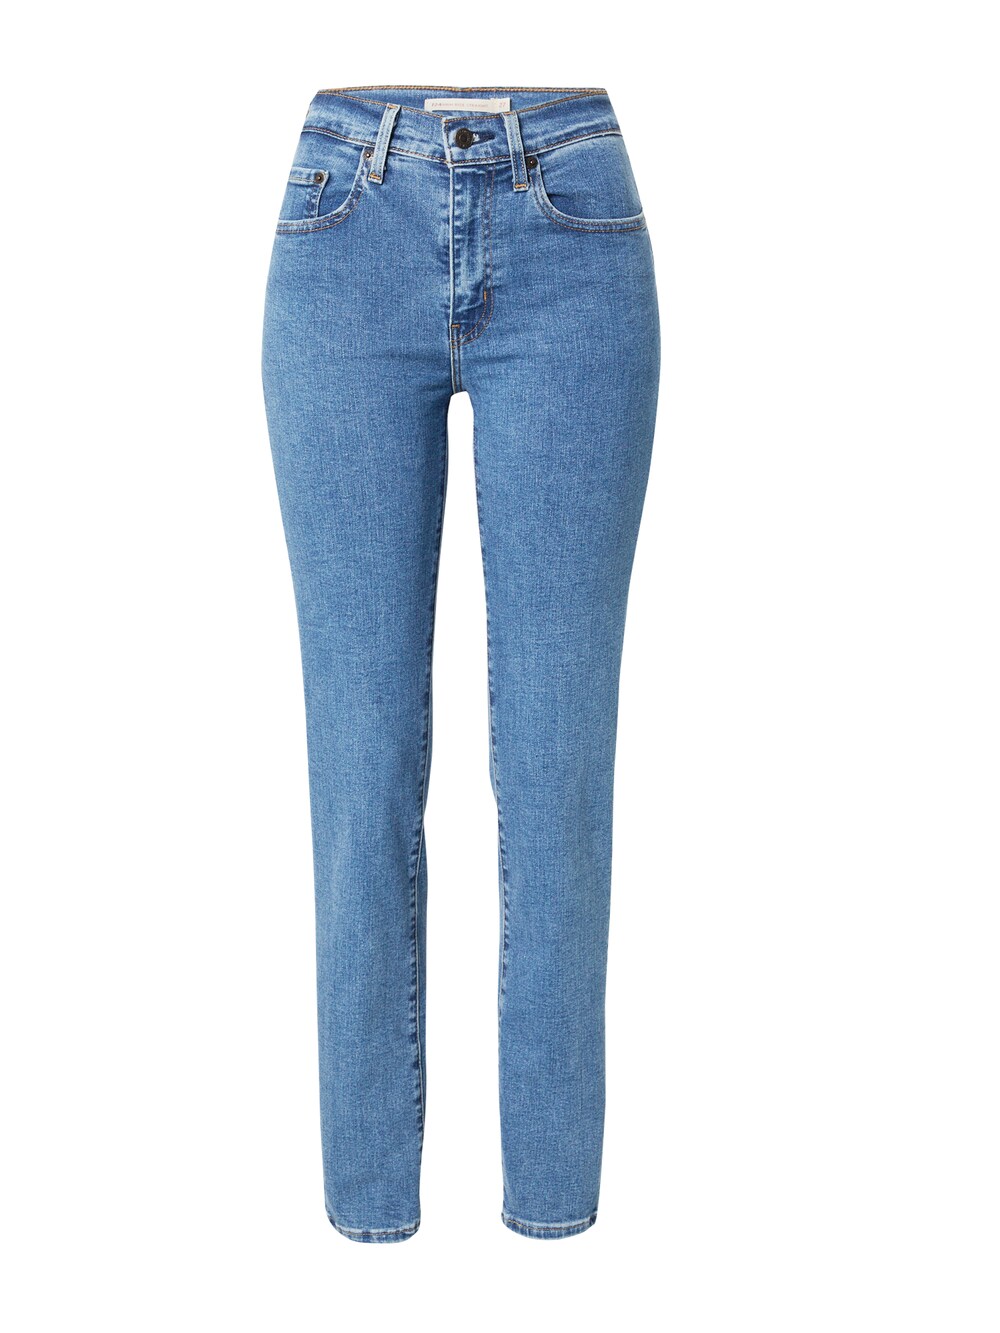 Обычные джинсы LEVIS 724, синий